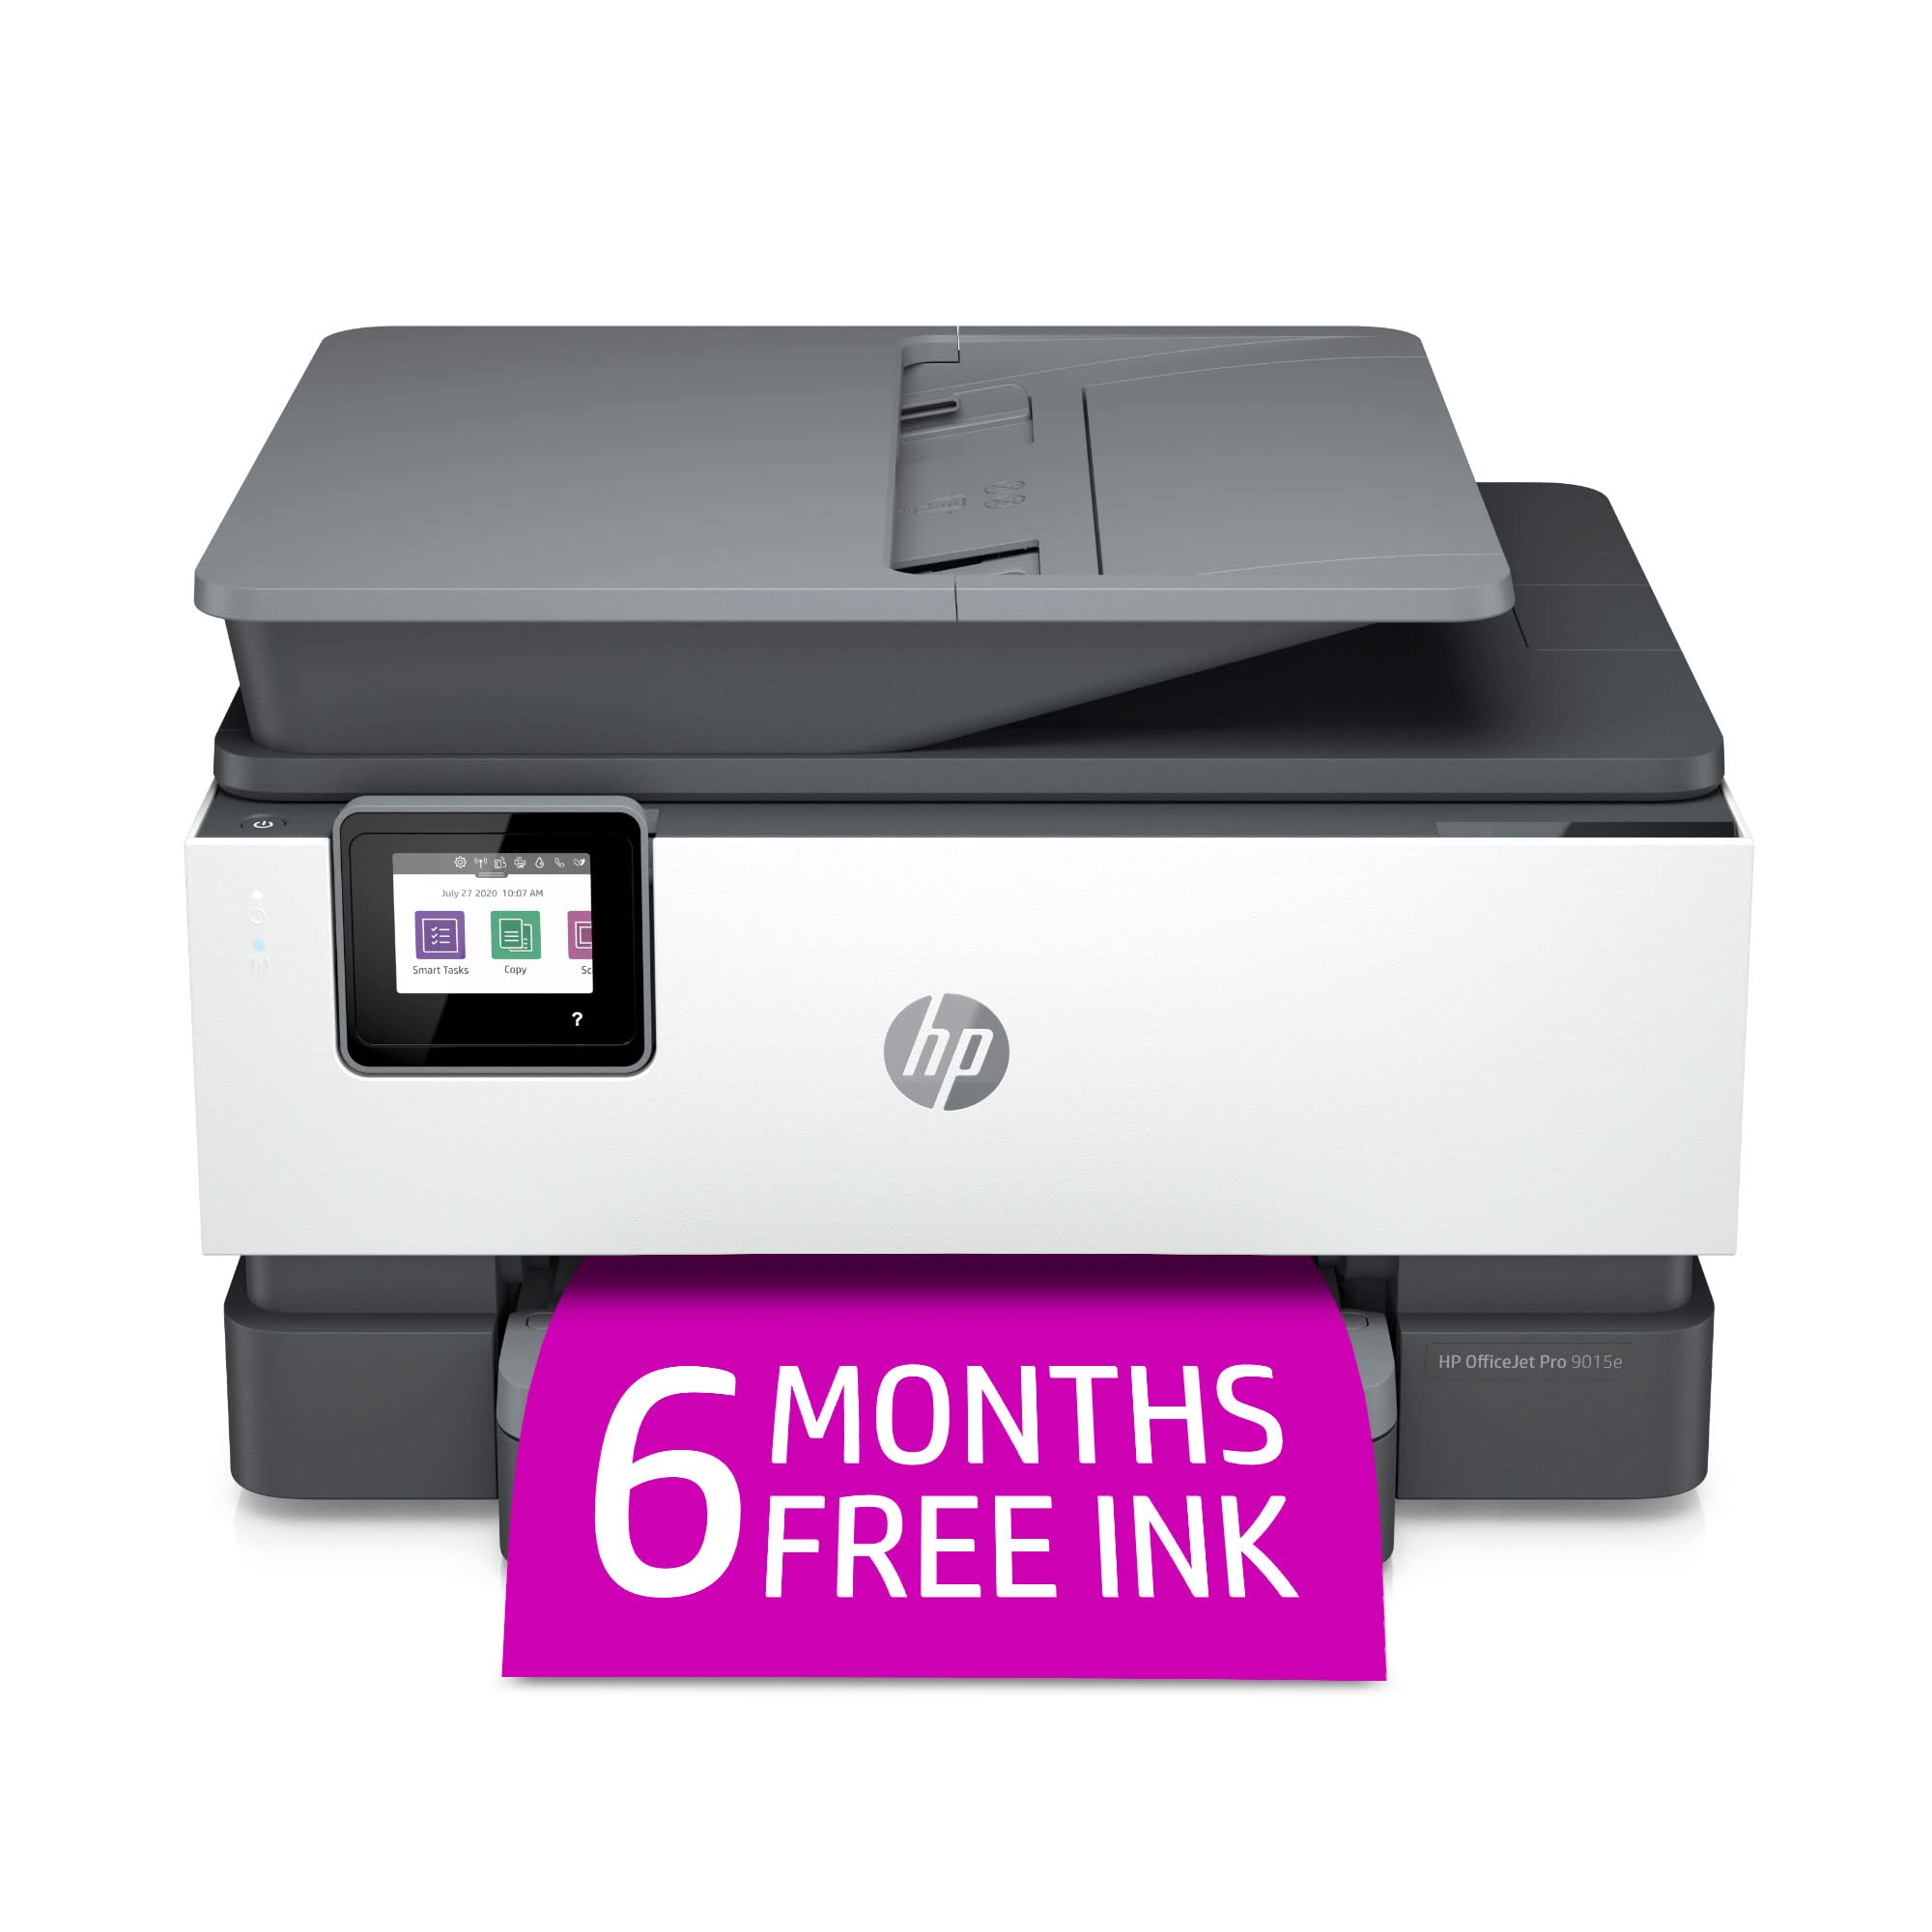 HP Impressora Multifuncional OfficeJet Pro 9015e Wireless Color com bônus de 6 meses Tinta instantânea com + (1G5L3A)